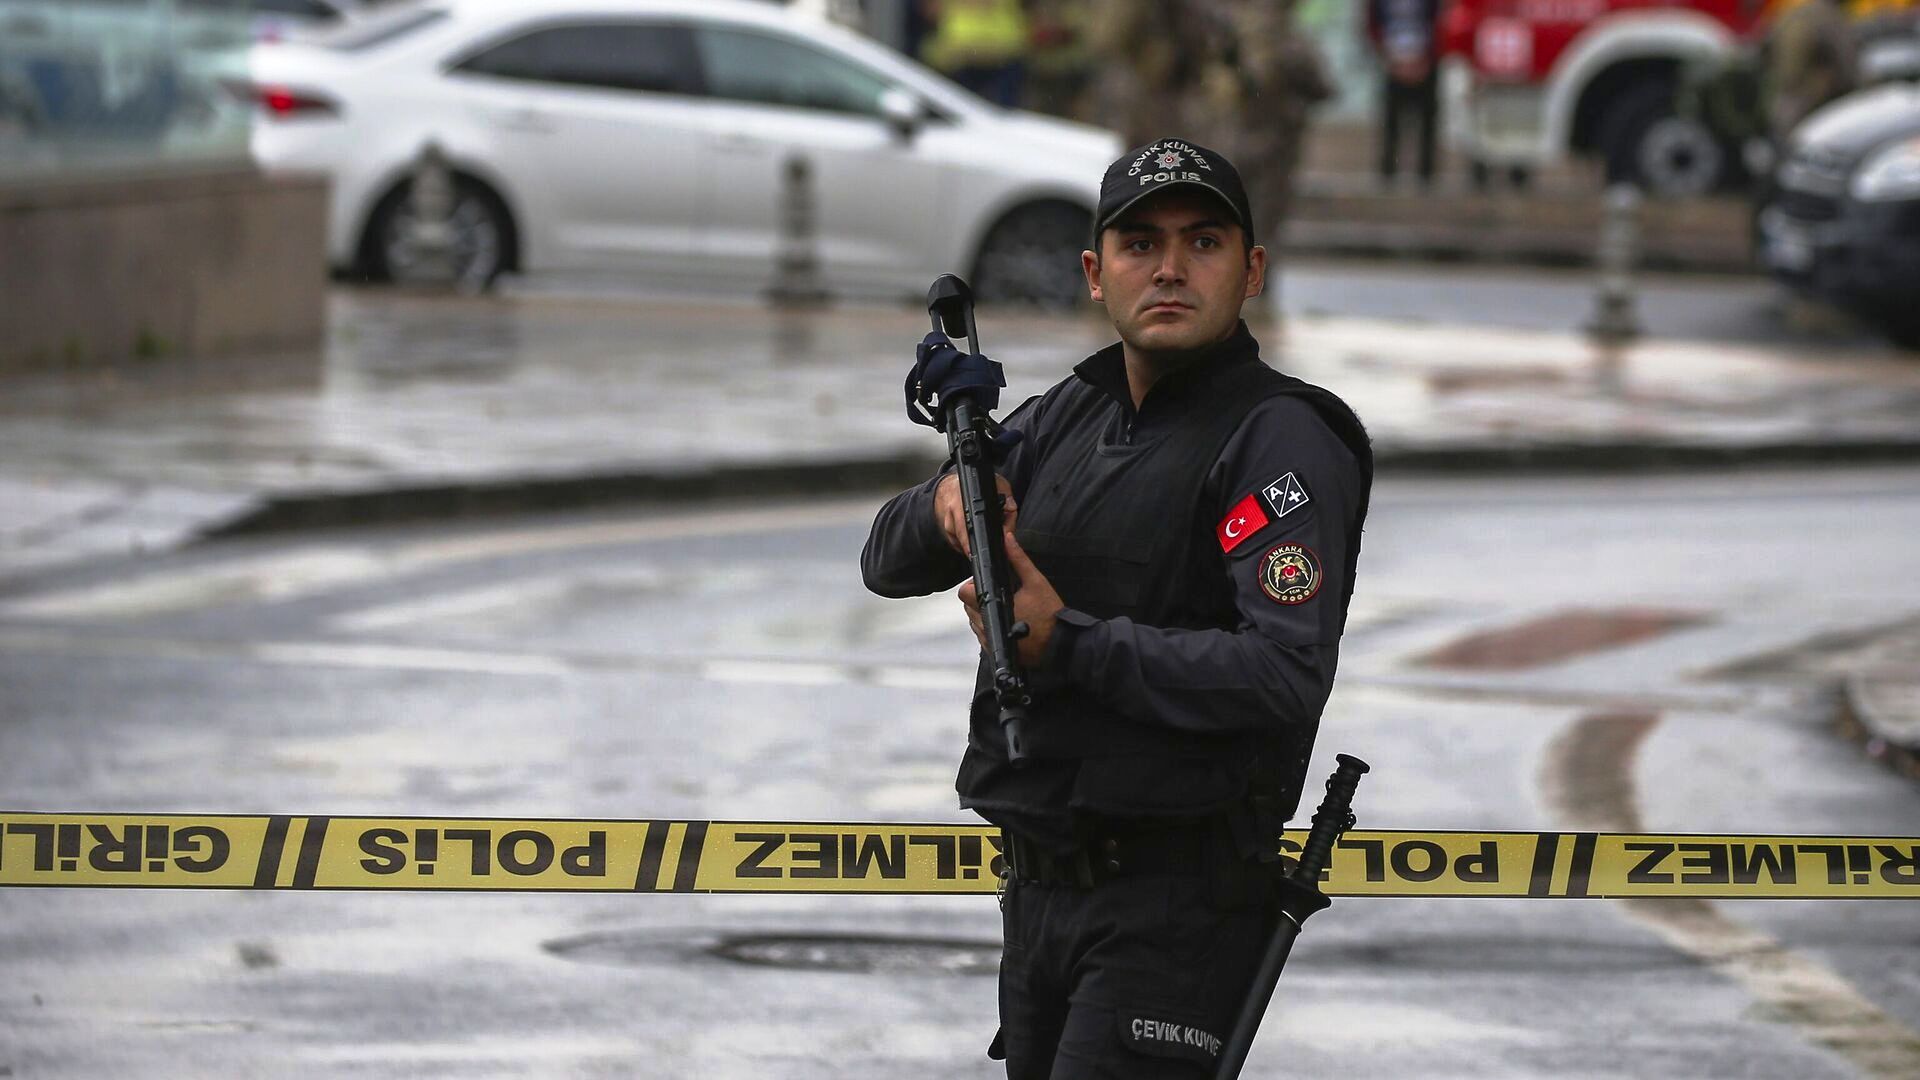 Заявление Правительства ЧРИ по поводу террористического акта в Анкаре